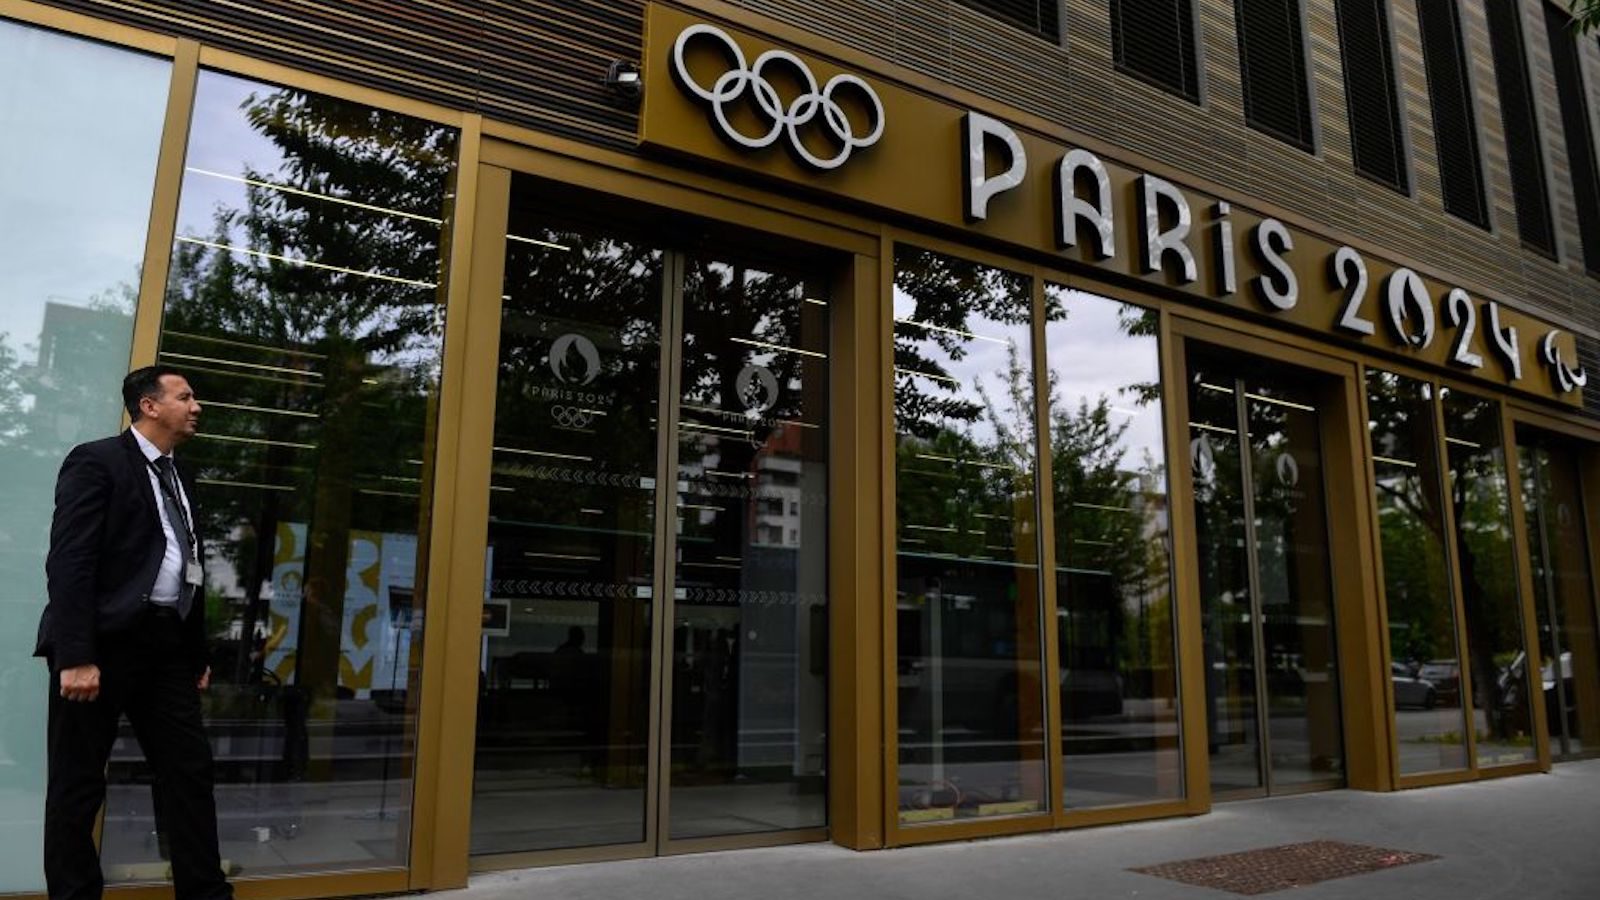 La police française perquisitionne les bureaux du comité d'organisation des Jeux olympiques de Paris 2024, selon un porte-parole